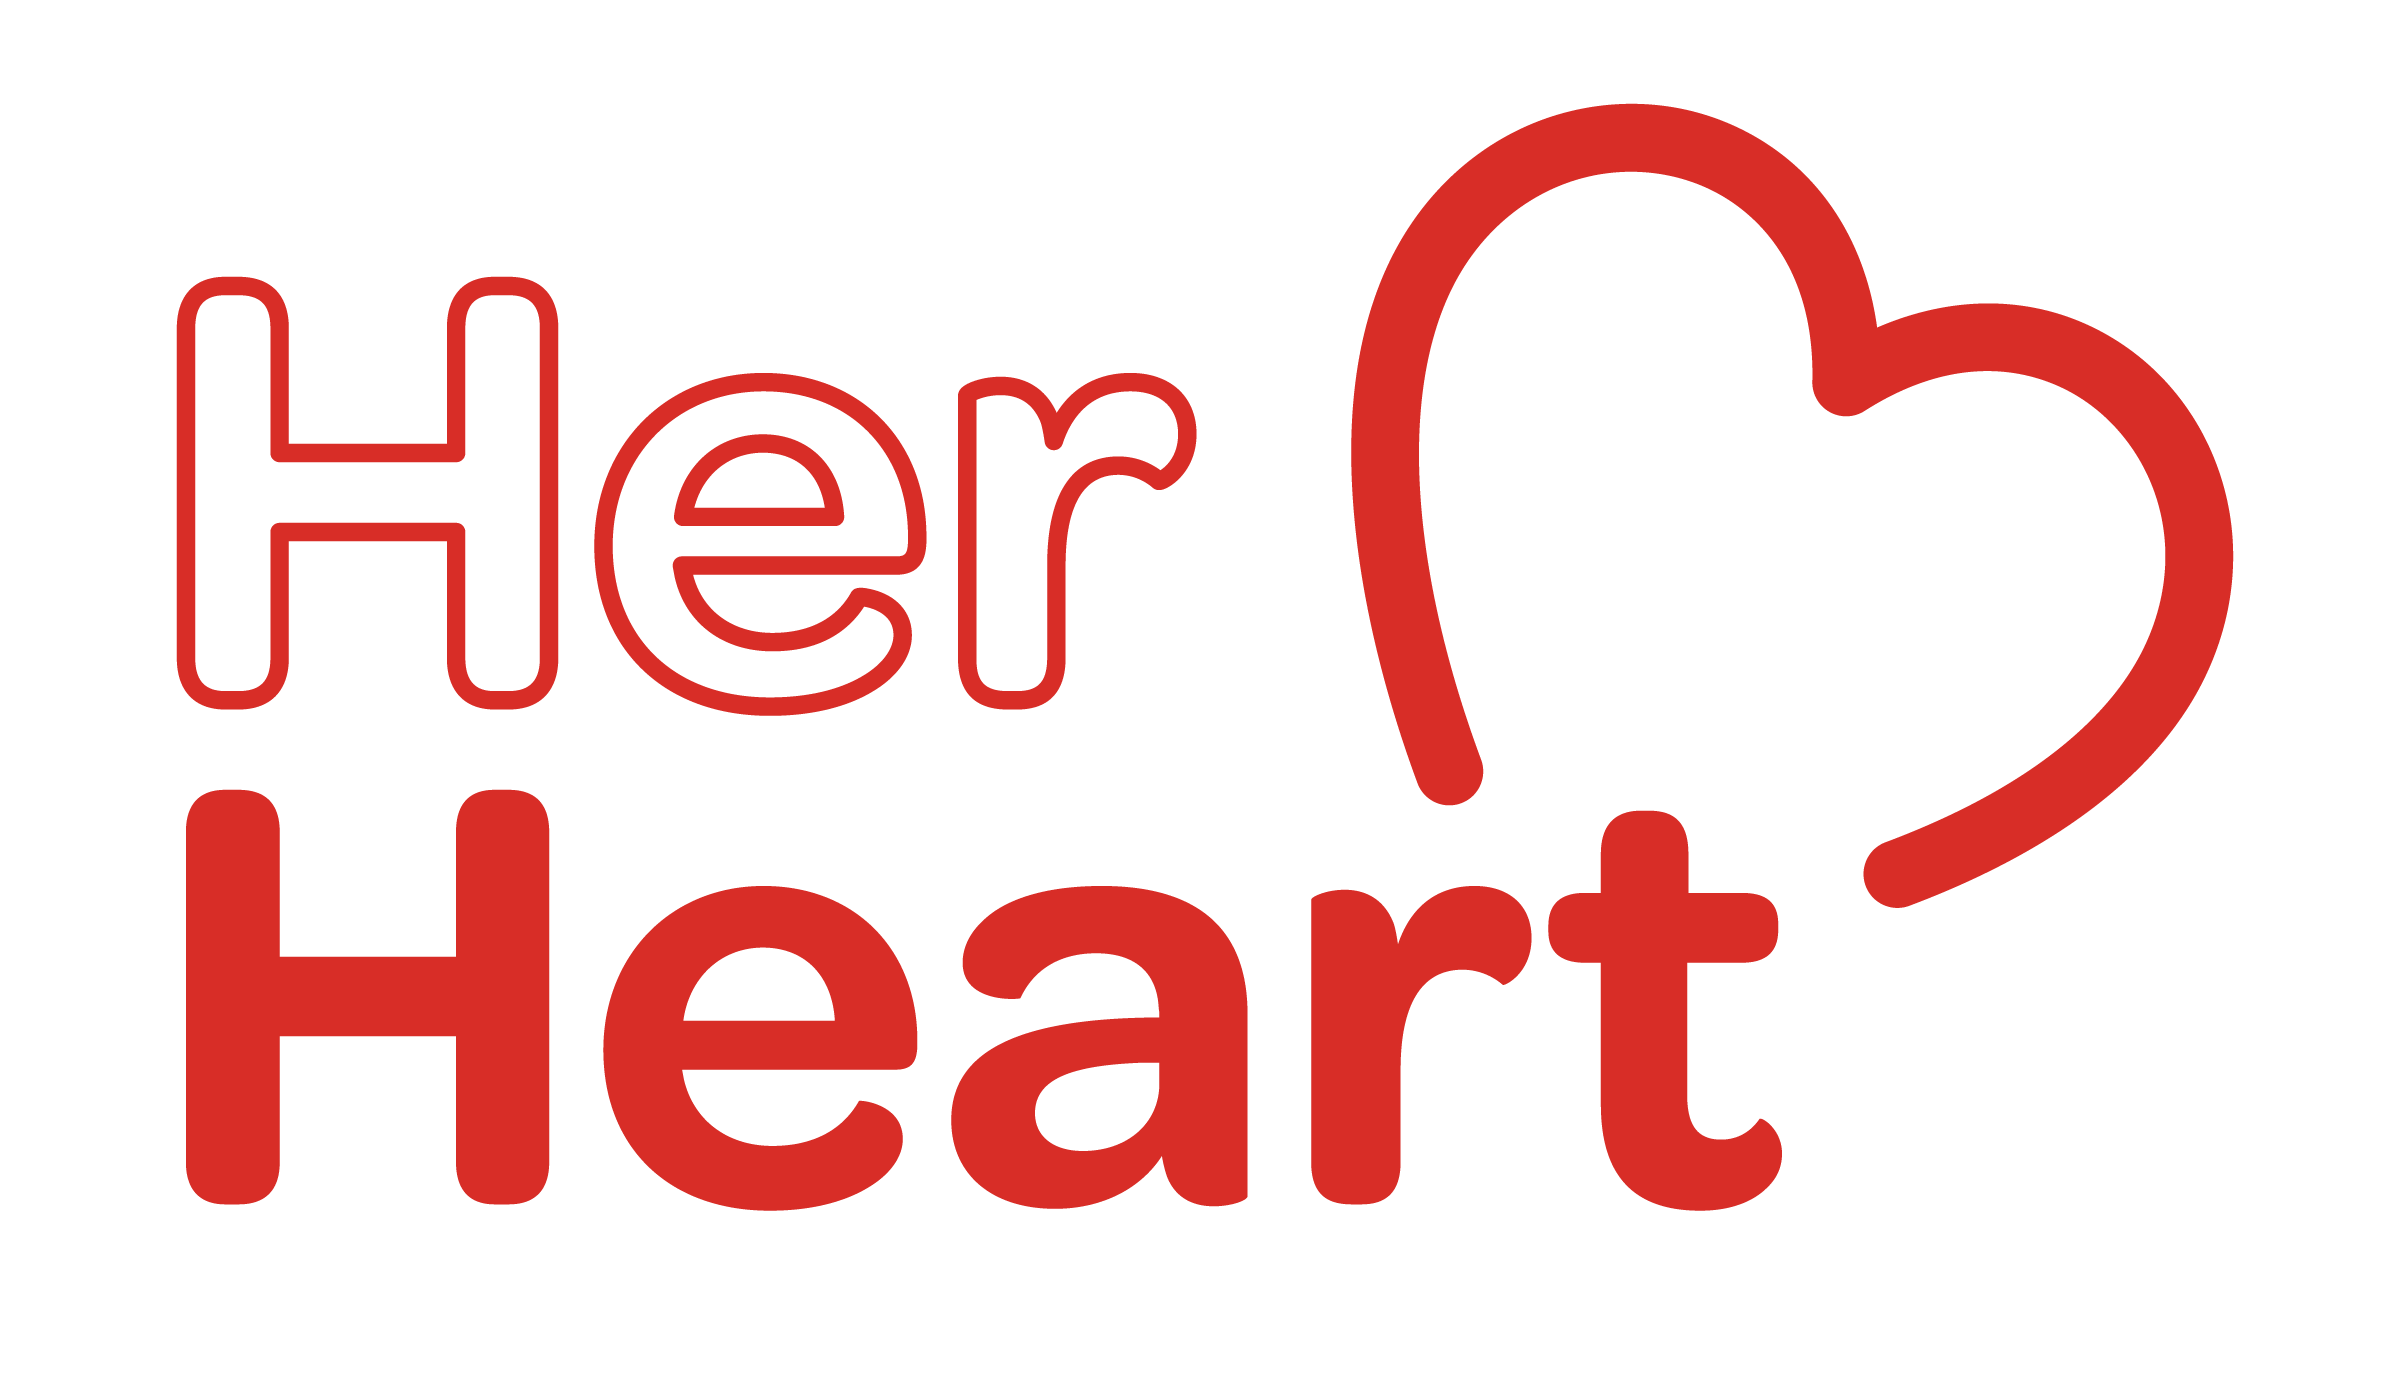 Register Your Her Heart Fundraiser